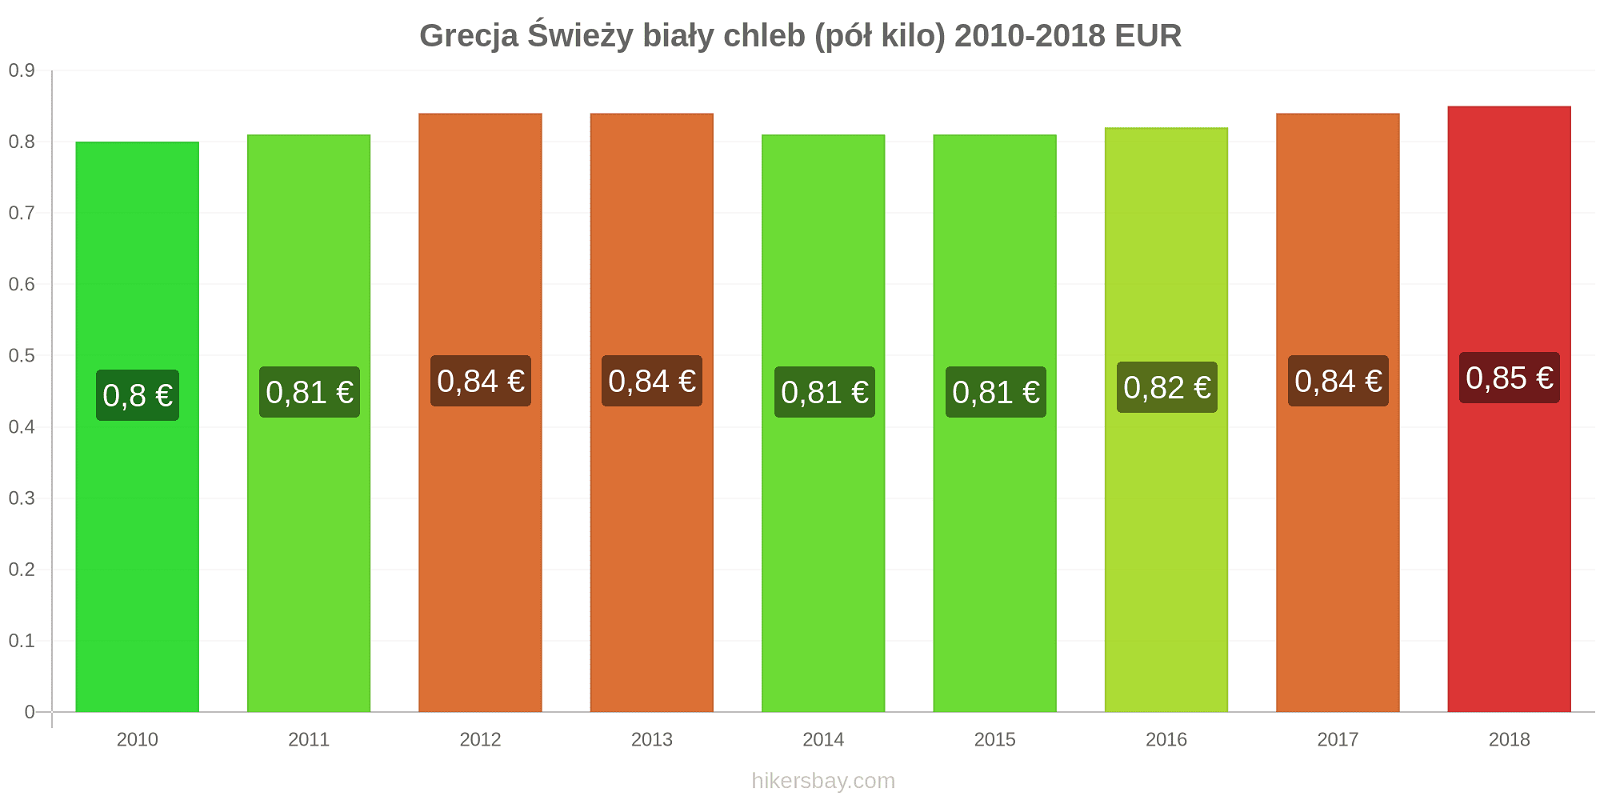 Grecja zmiany cen Chleb pół kilo hikersbay.com